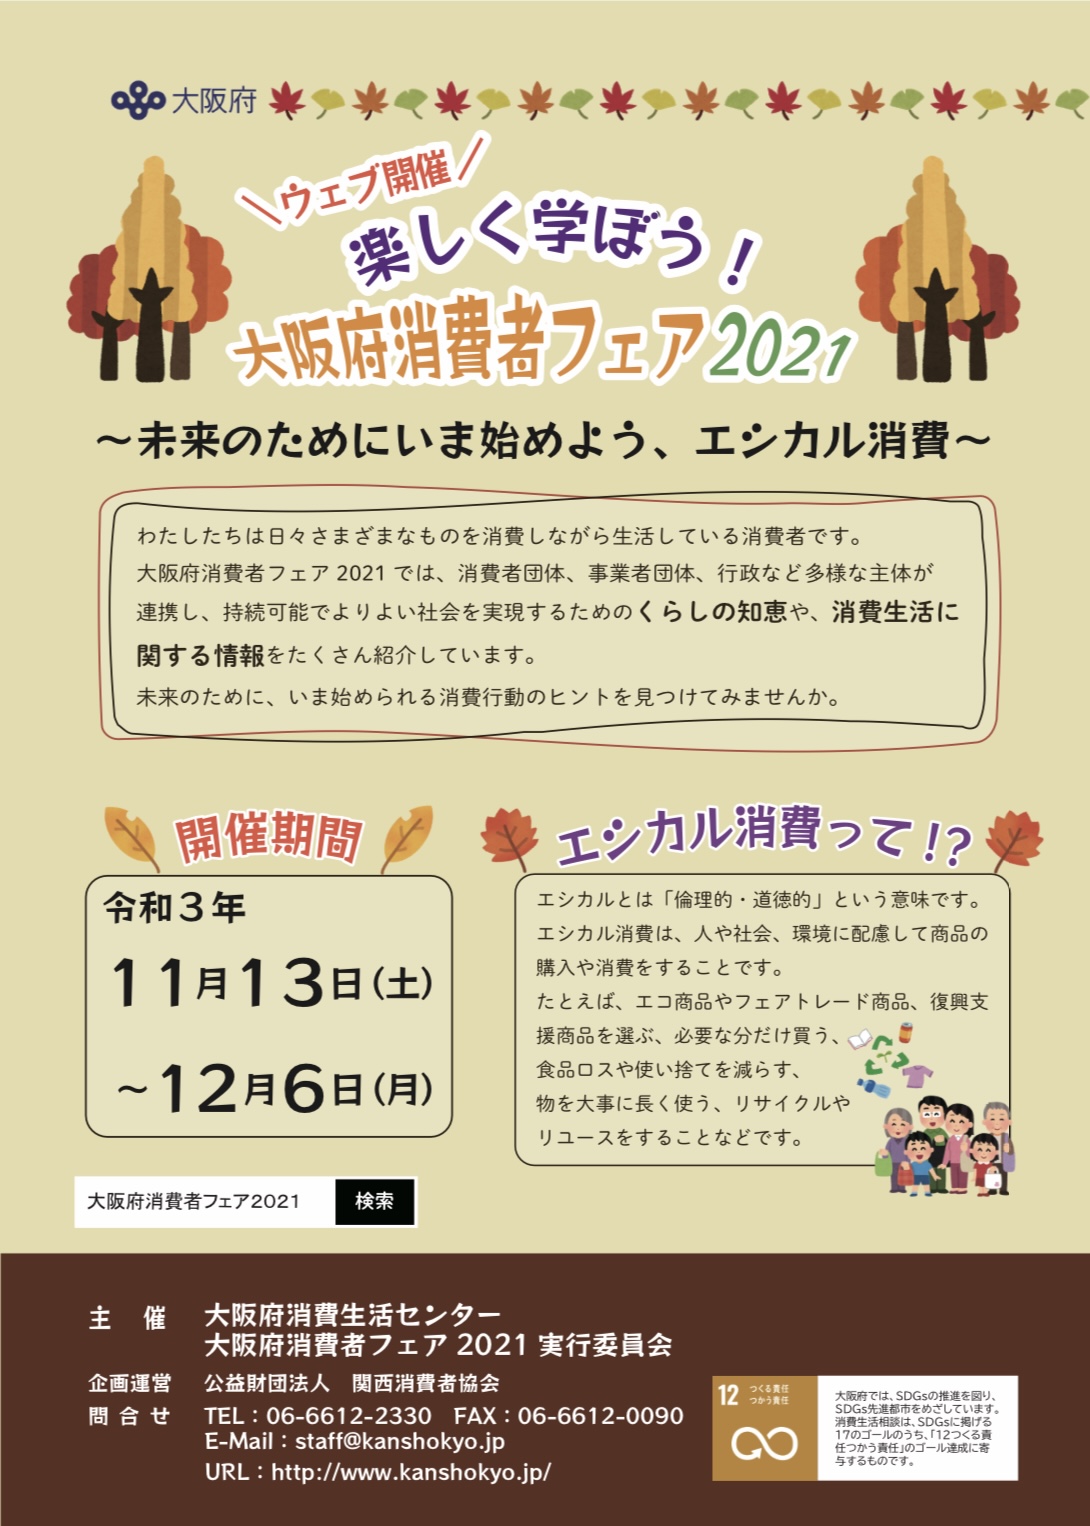 大阪府消費者フェア2021に出展決定